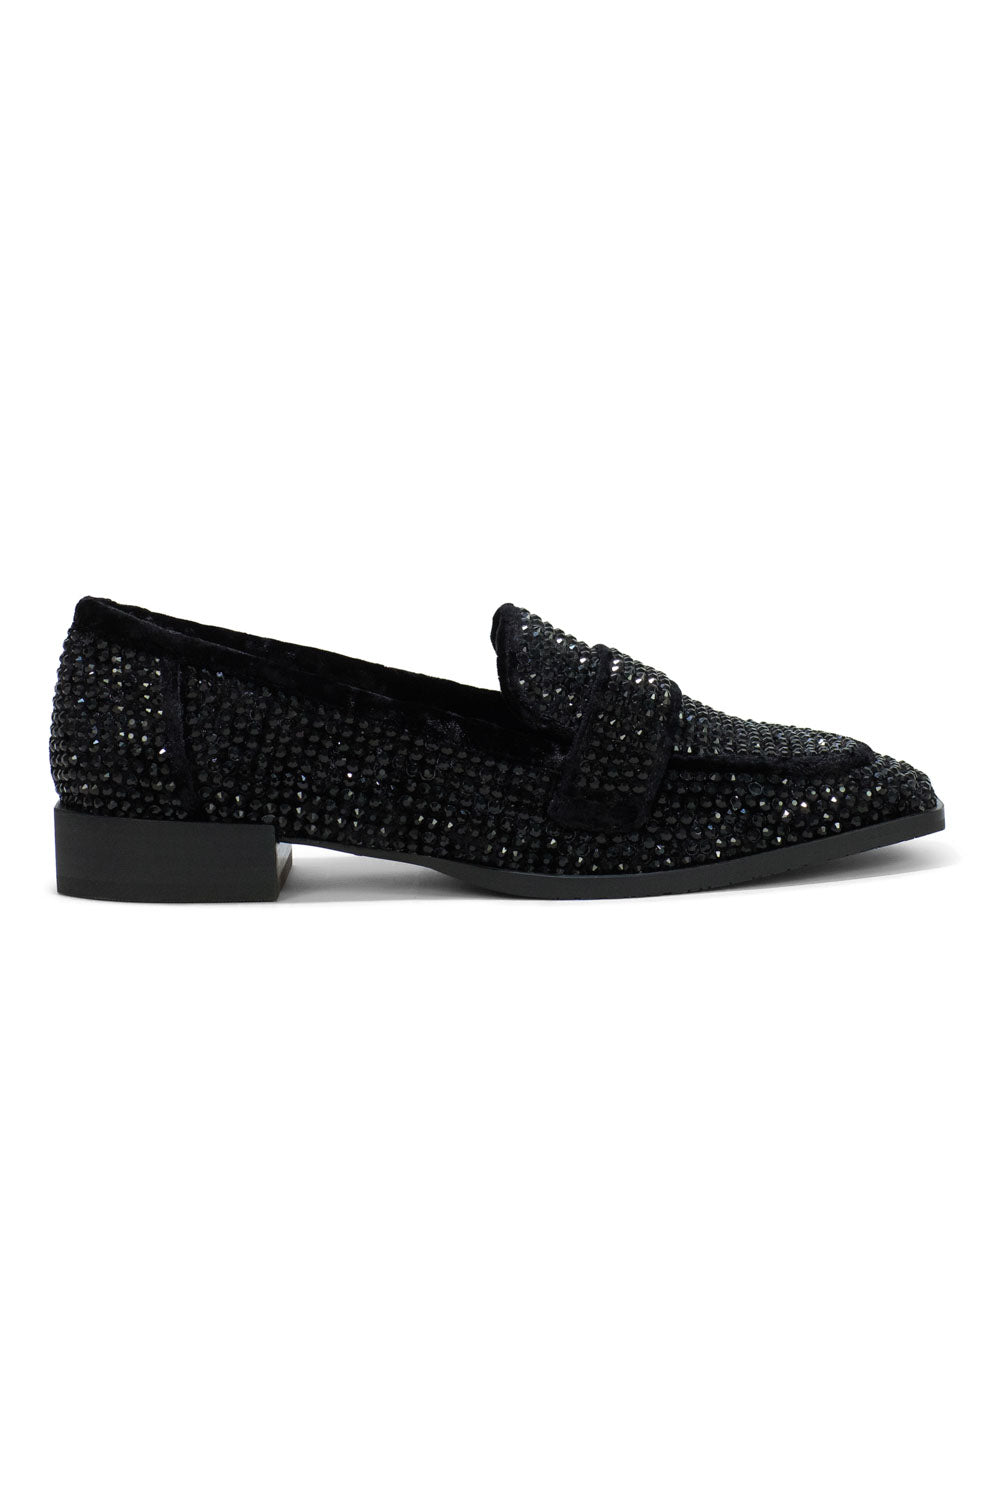 NYDJ Tracee Loafers In Embellished Velvet - Black